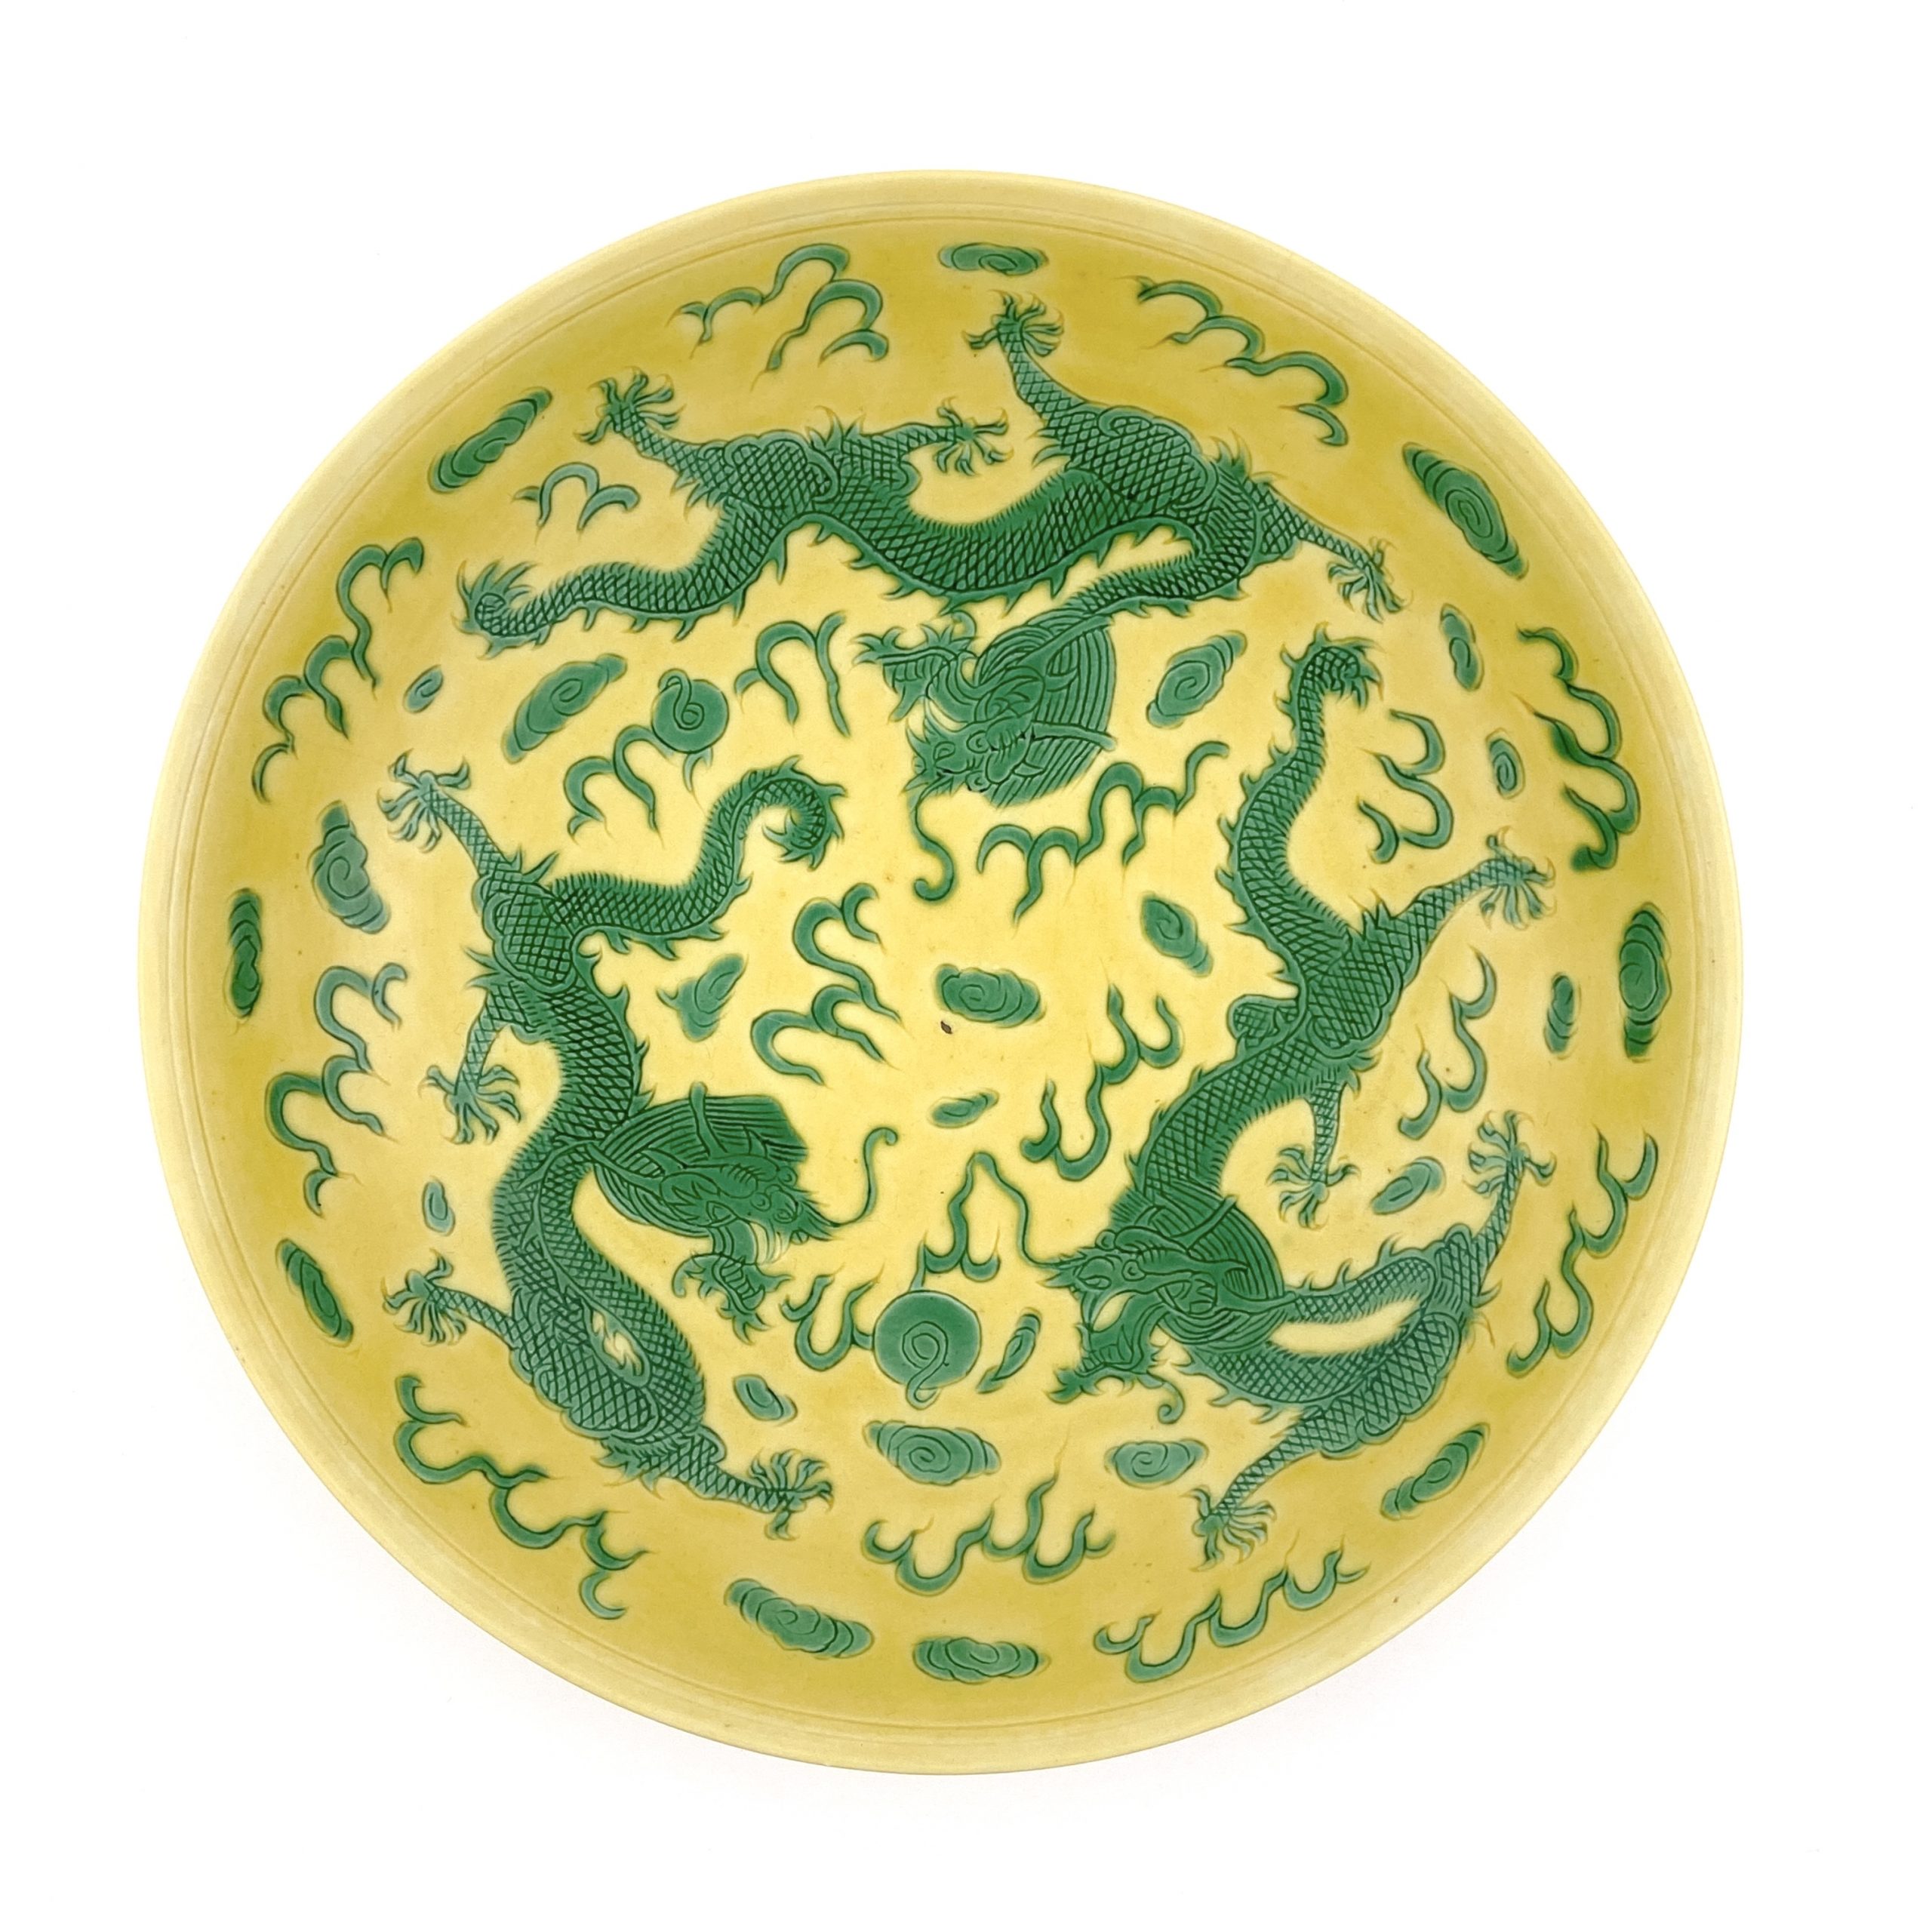 26506	「大清康煕年製」款 黄地緑彩 龍紋 盤